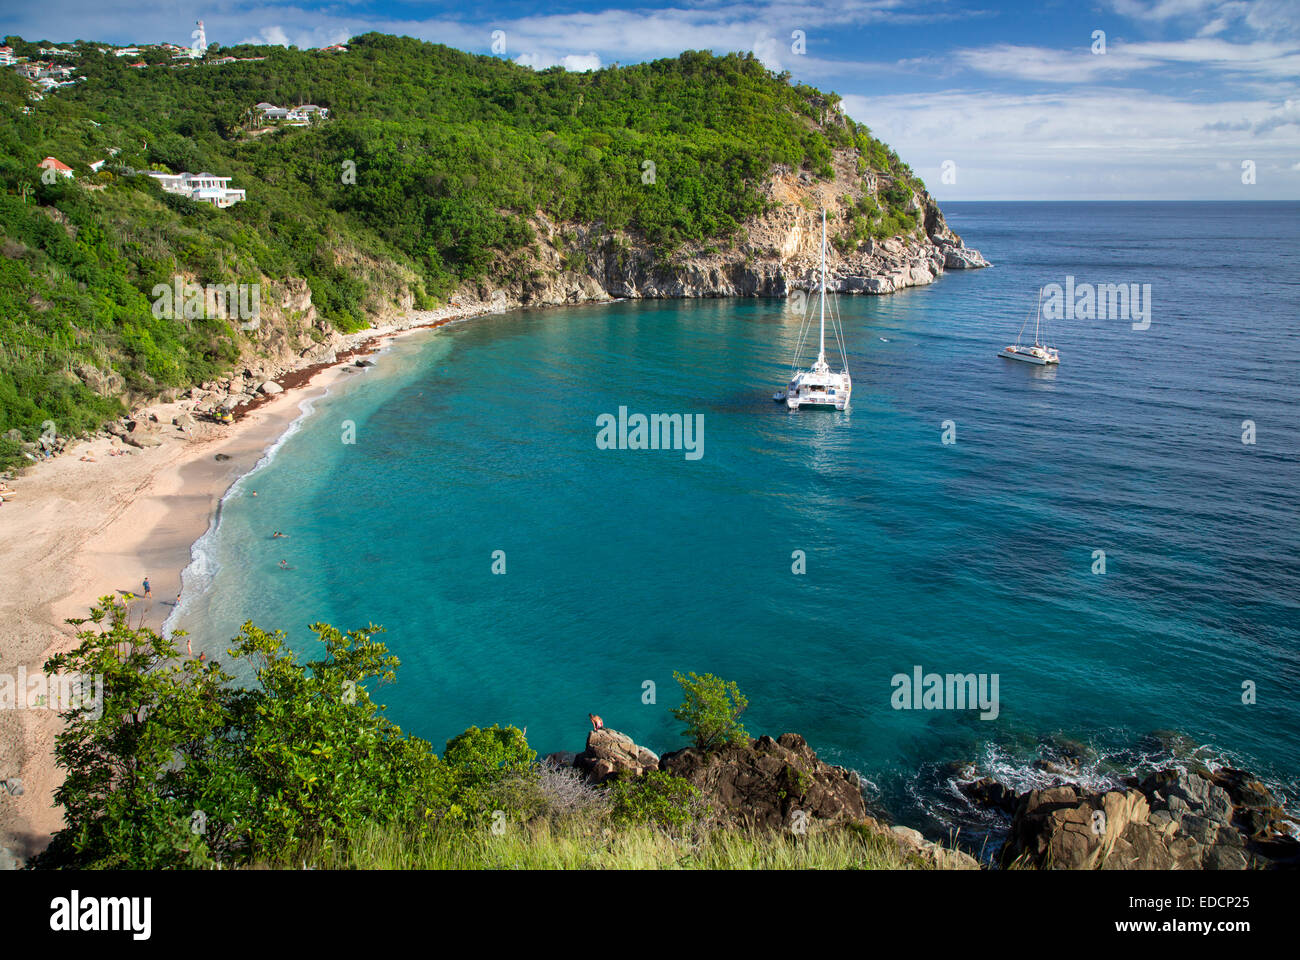 Bateaux ancrés au large de la plage de Shell Beach à Gustavia, St Barths, French West Indies Banque D'Images